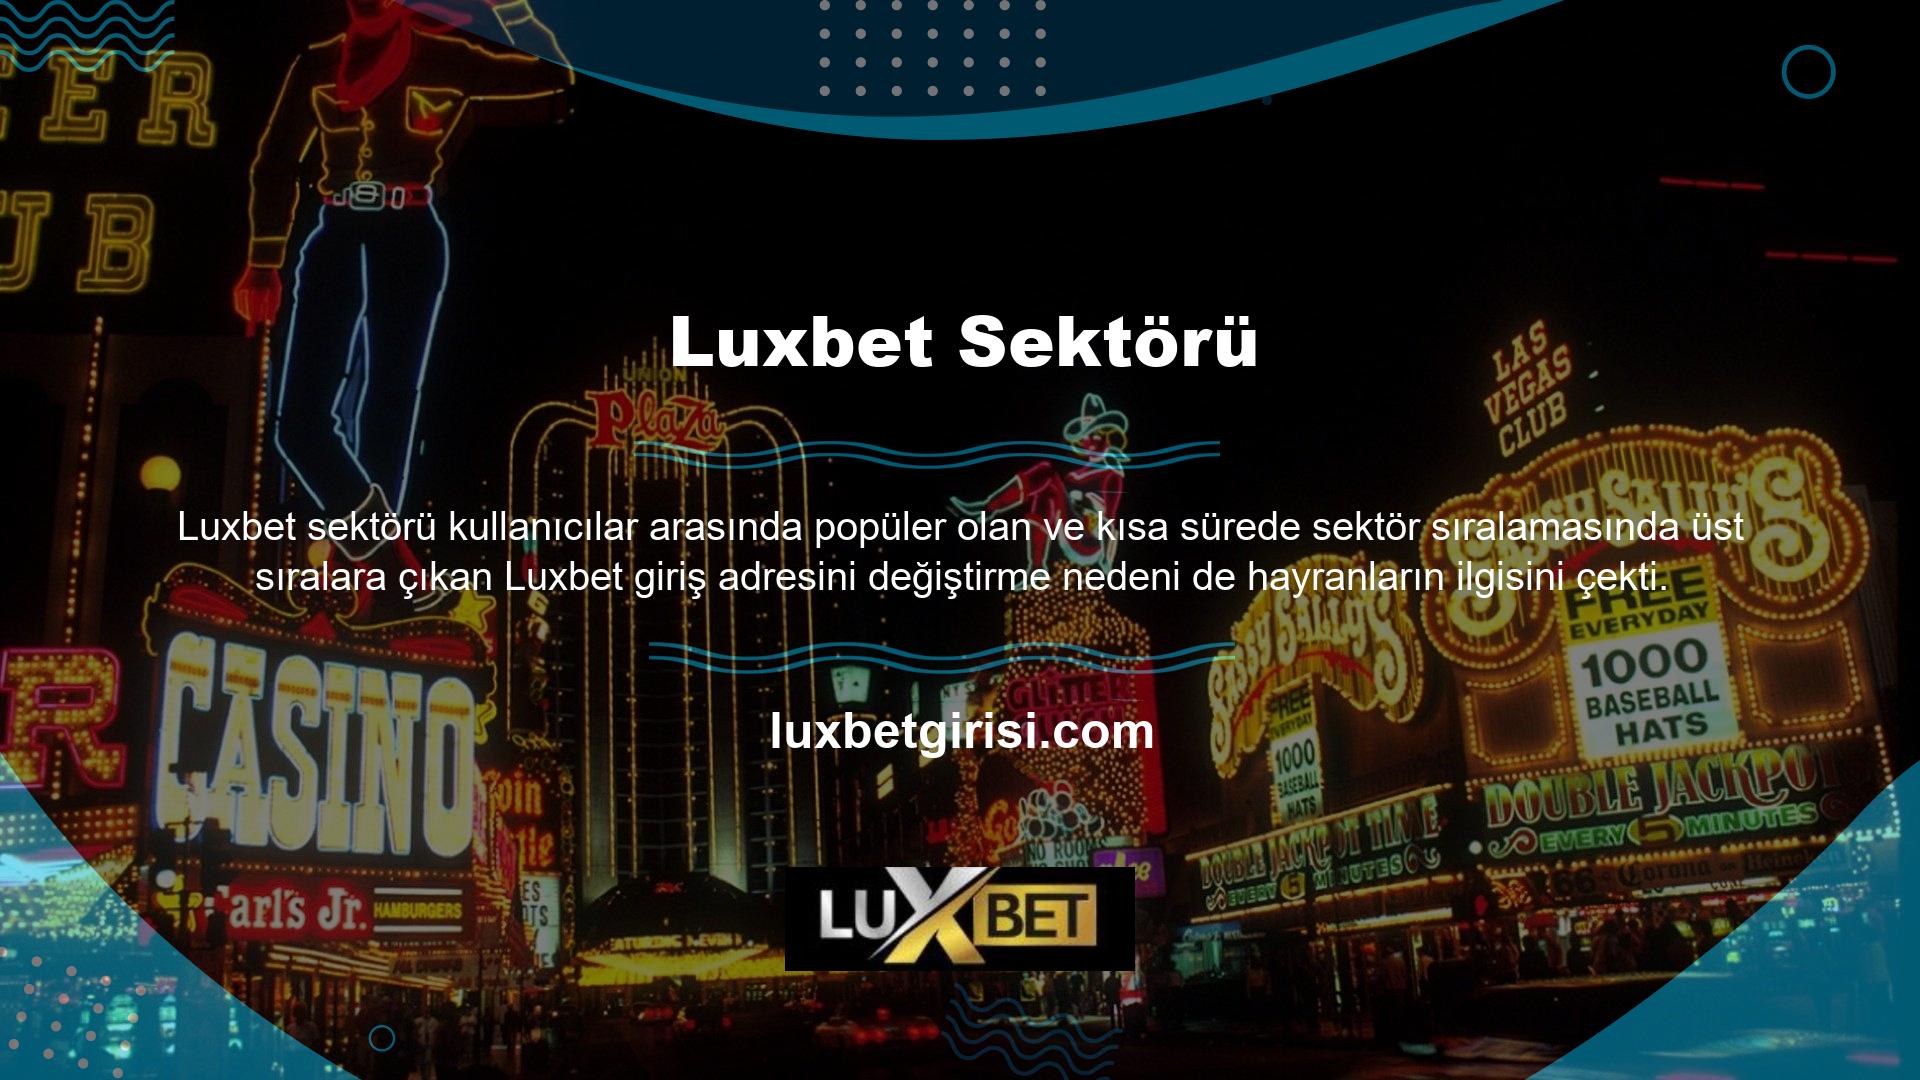 Halen aktif olan çevrimiçi casino siteleri Luxbet ve Online Casino, üçüncü yılda da kesintisiz olarak devam etti